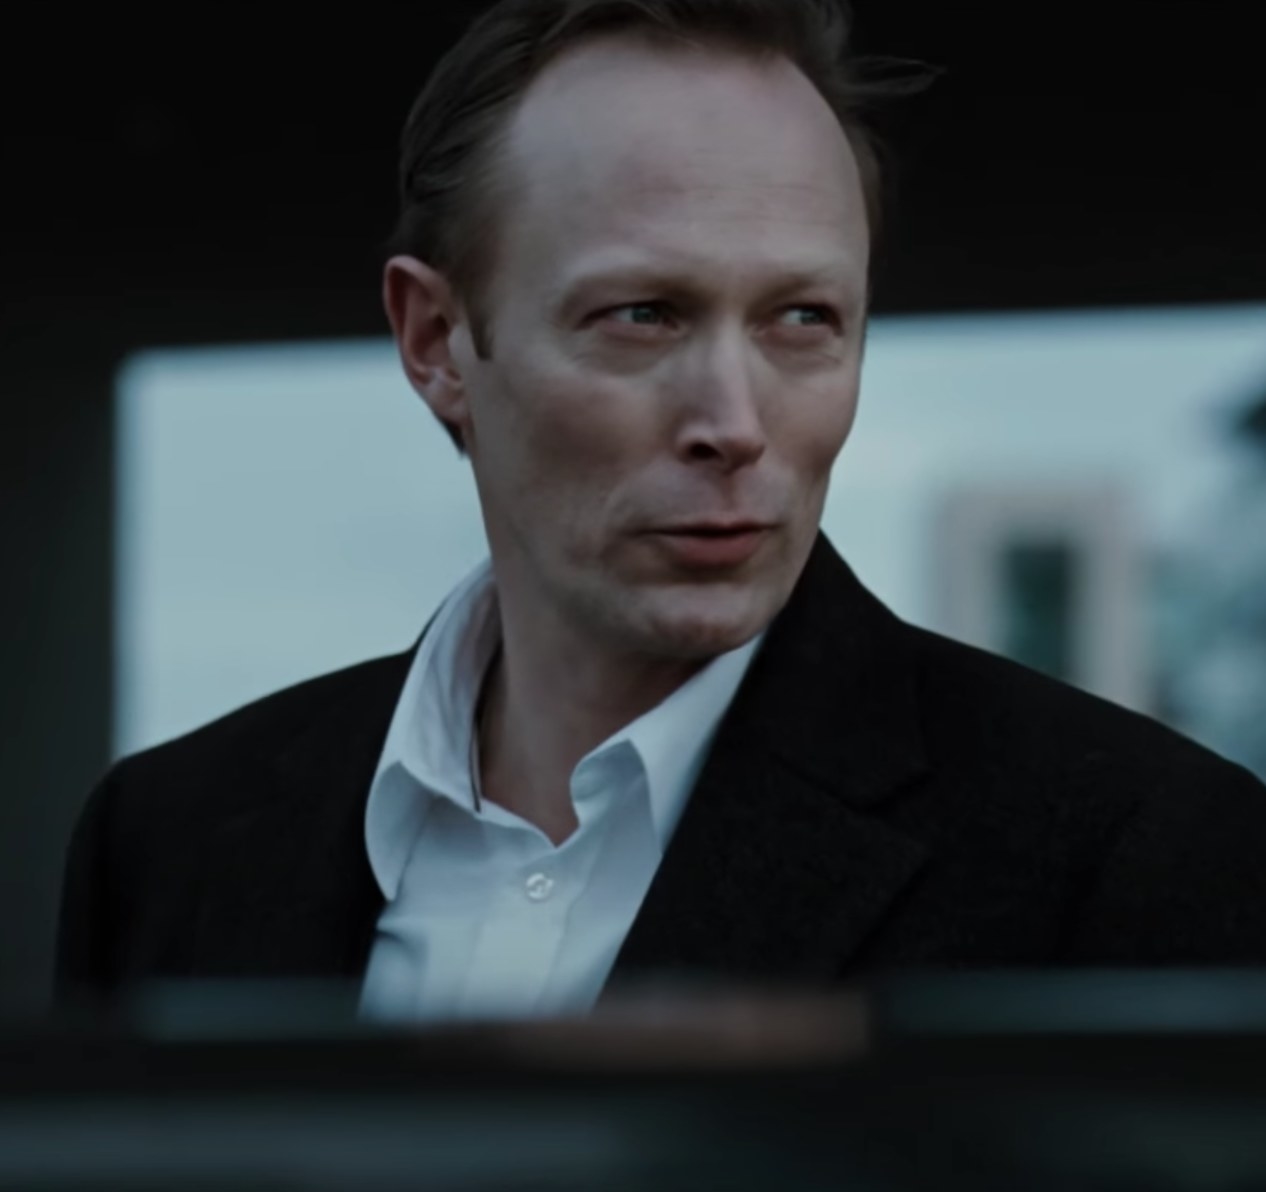 Lars Mikkelsen as Martin Vinge in the 2009 trailer for &quot;Headhunter&quot;